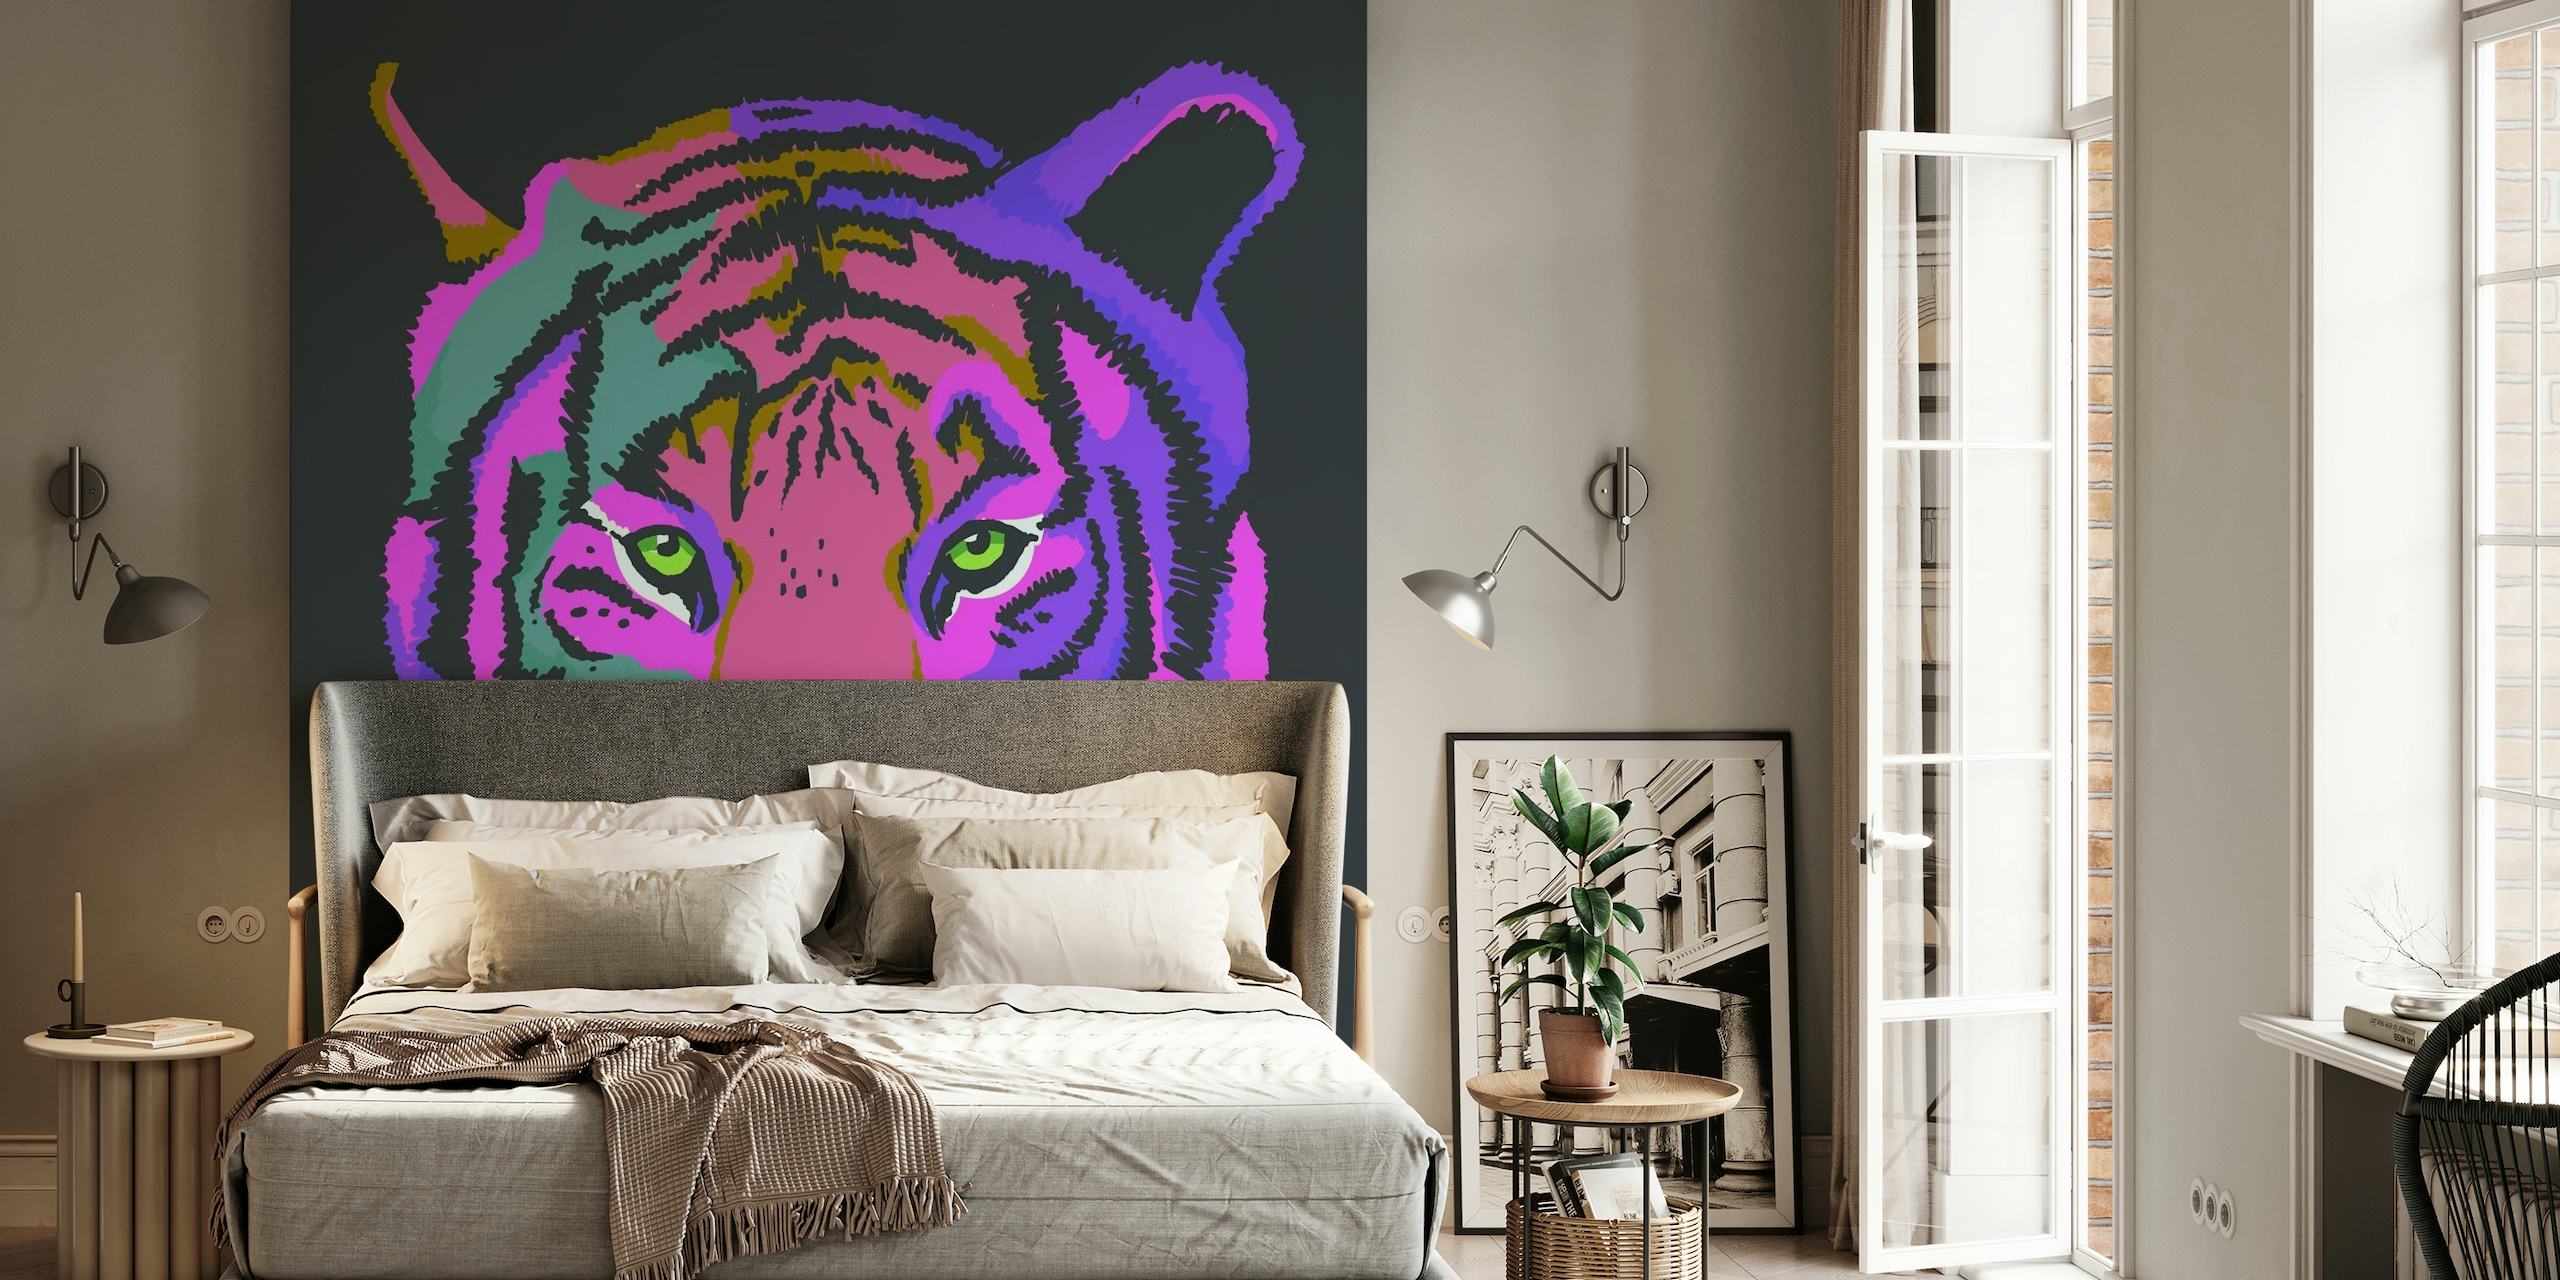 Une fresque murale colorée représentant un tigre stylisé dans des tons de violet et de rose sur un fond sombre.